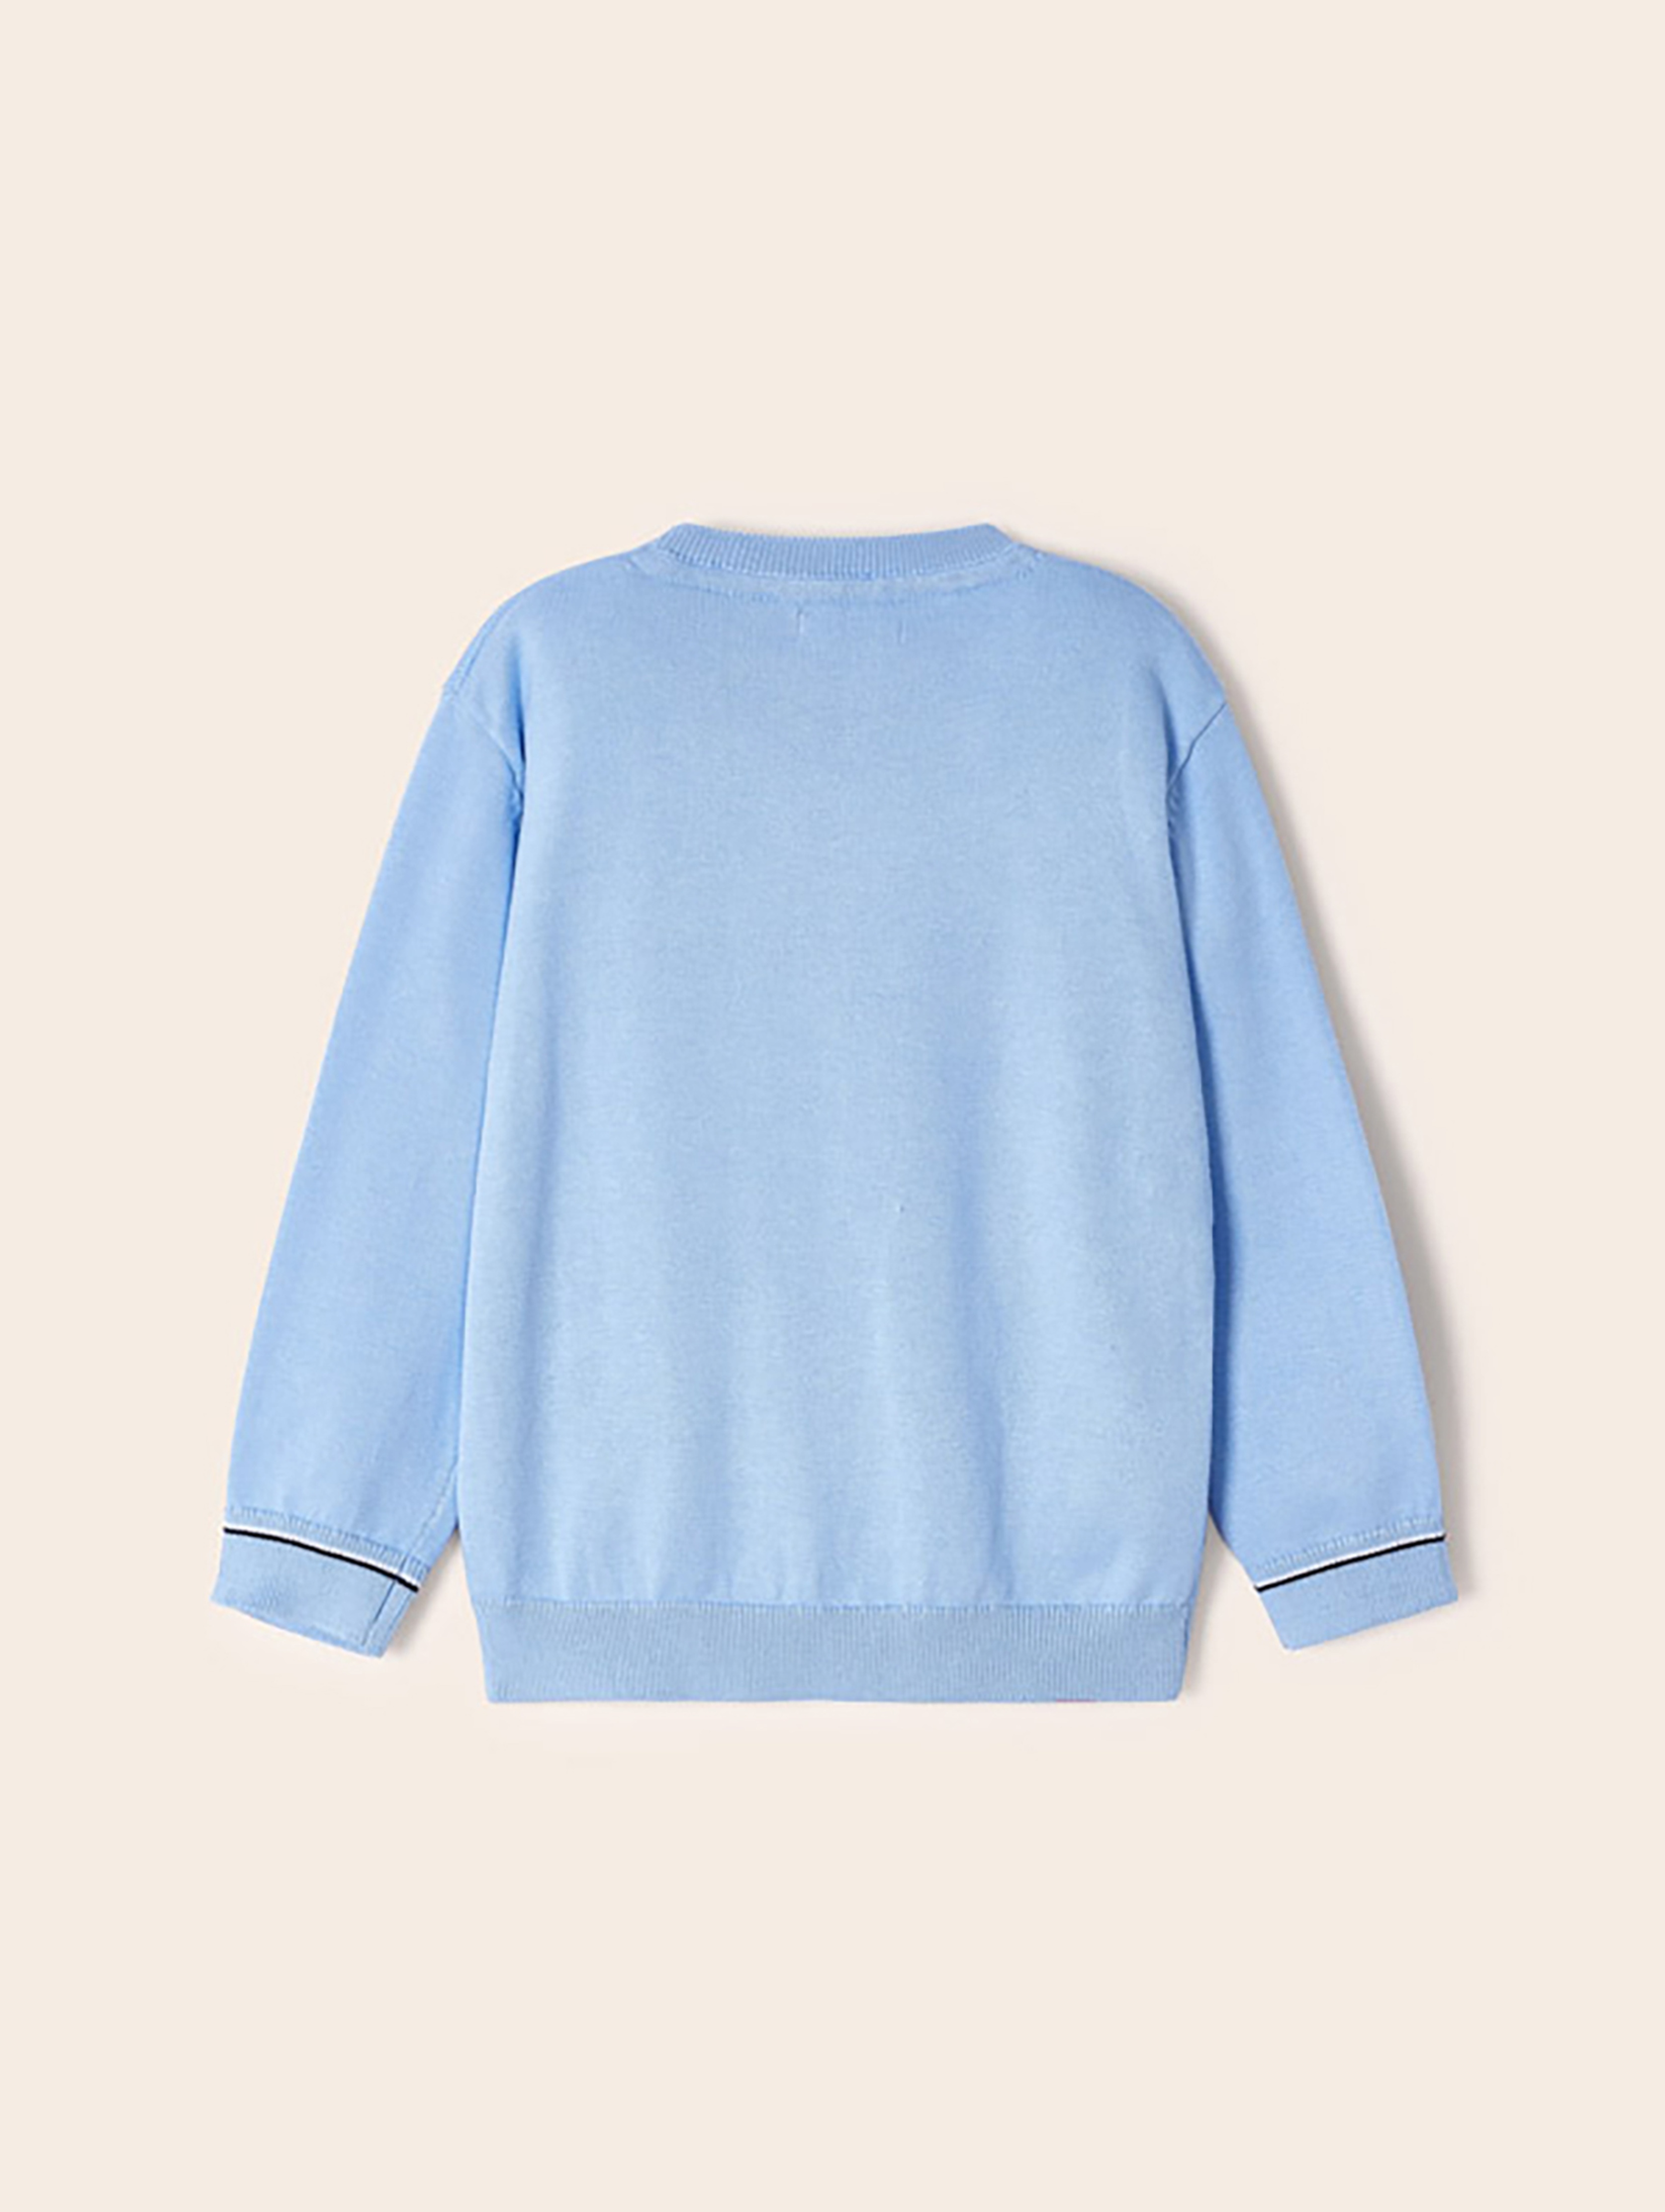 Sweter dla chłopca Mayoral - niebieski